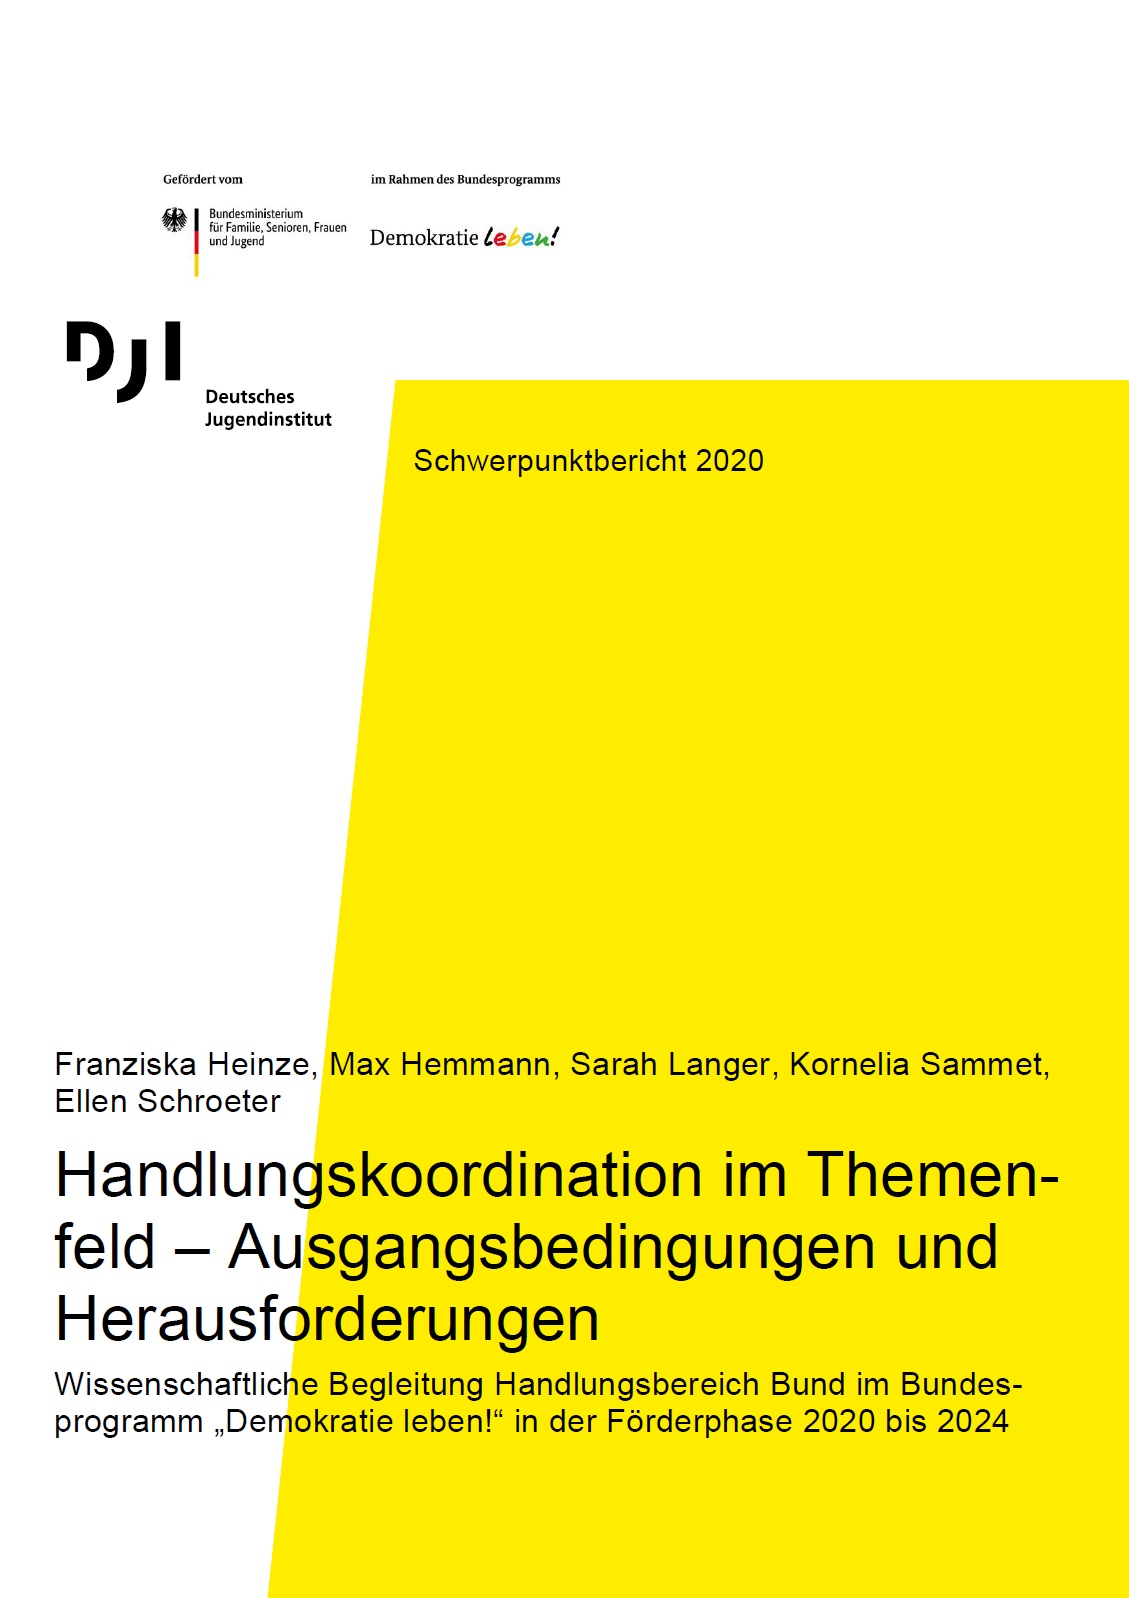 Das Bild ist in gelber und weißer Farbe geteilt. Auf dem Bild steht Schwerpunktbericht 2020 - Handlungskoordination im Themenfeld